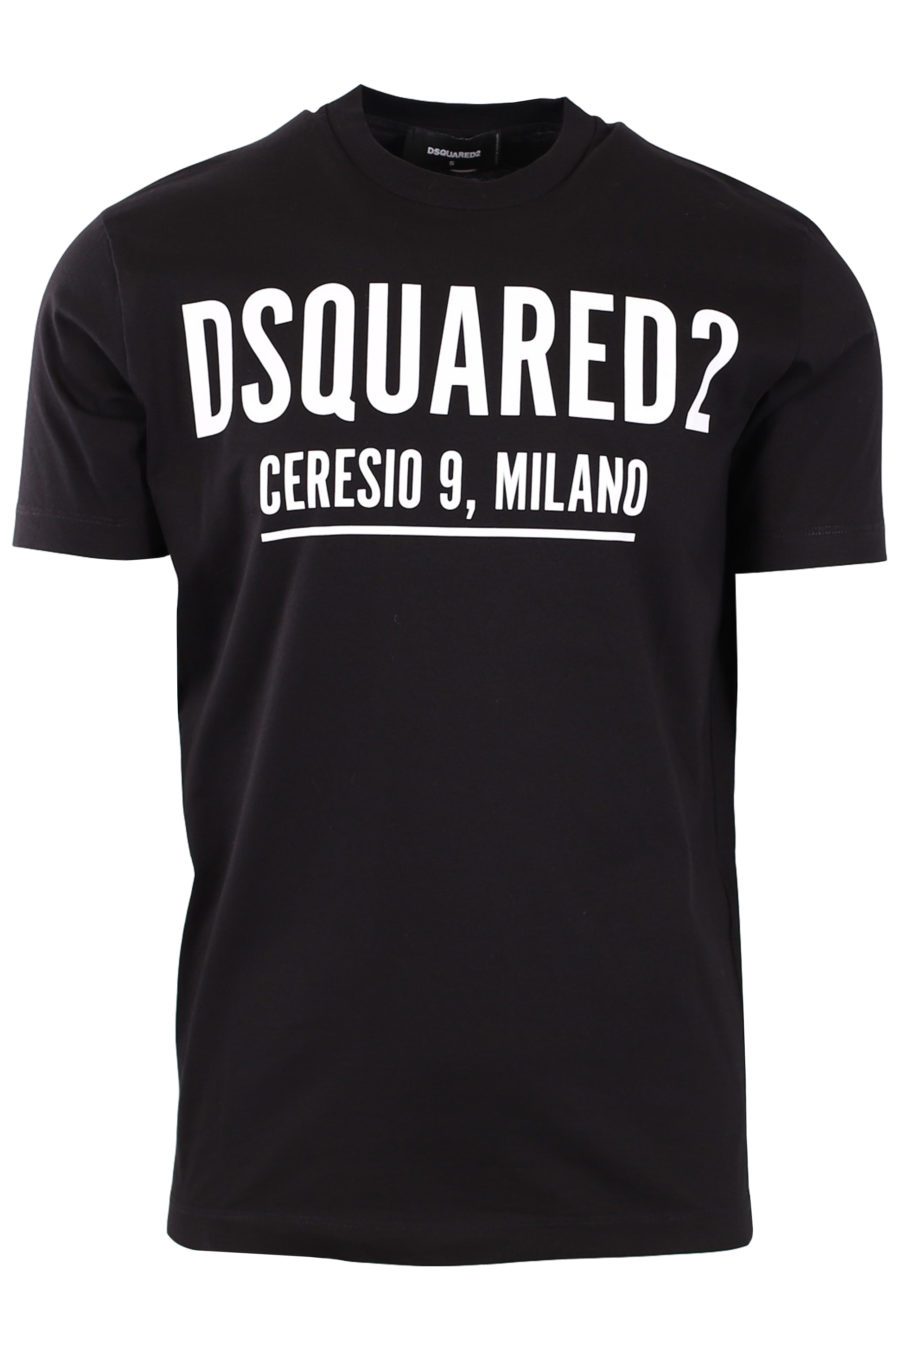 Camiseta negra con estampado blanco "Ceresio 9 Milano" - c3237da25770cfc59ea861161d24ac6df31a3ef6